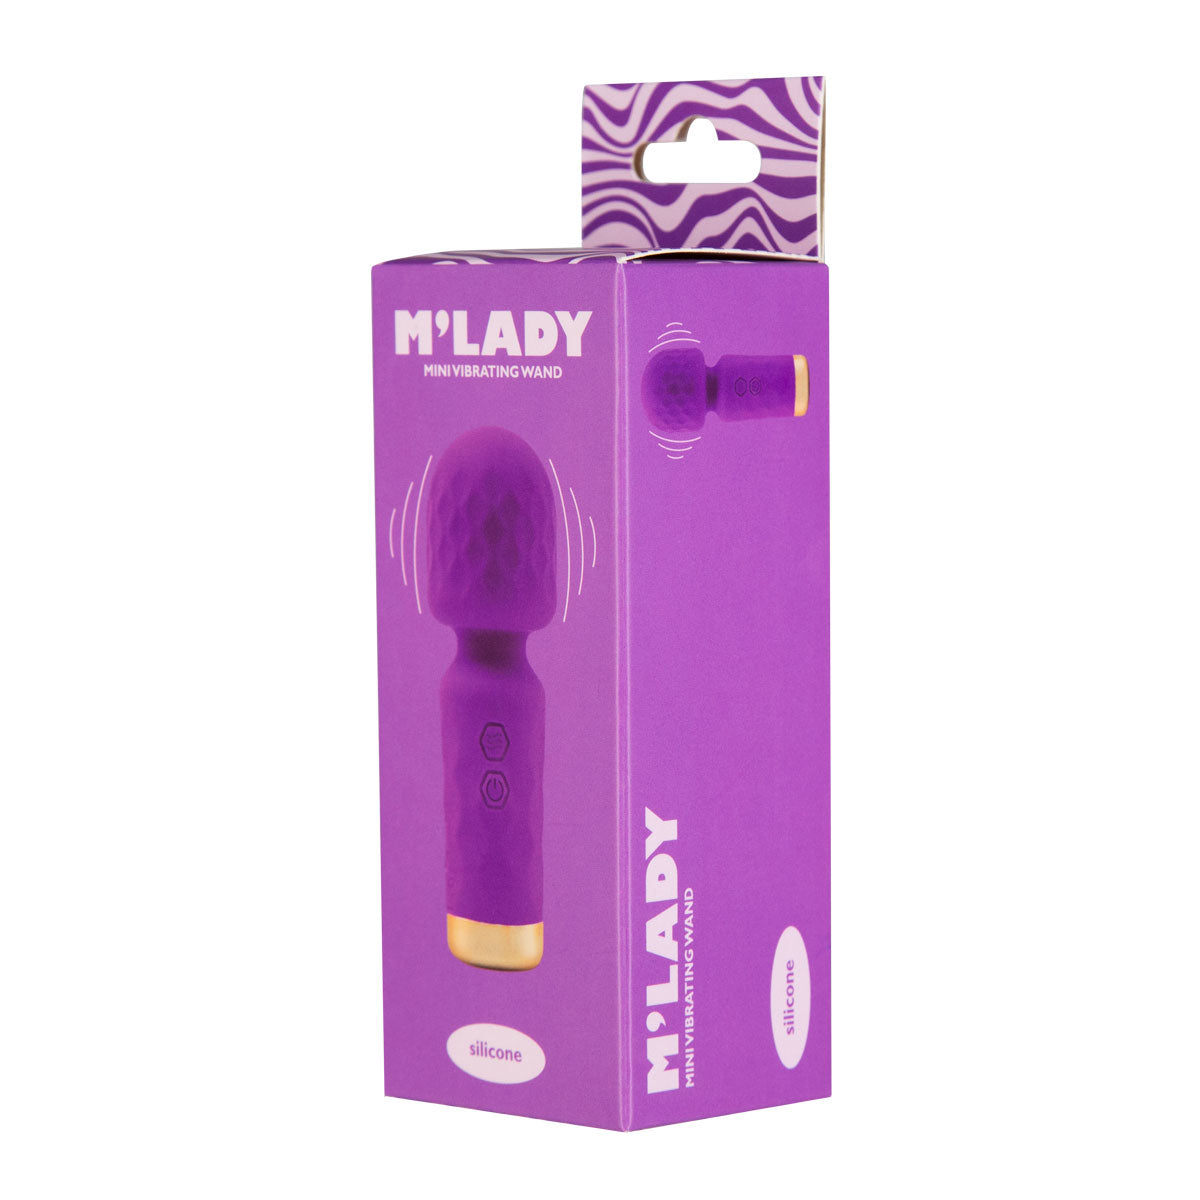 M’Lady – Mini Vibrating Wand – Purple